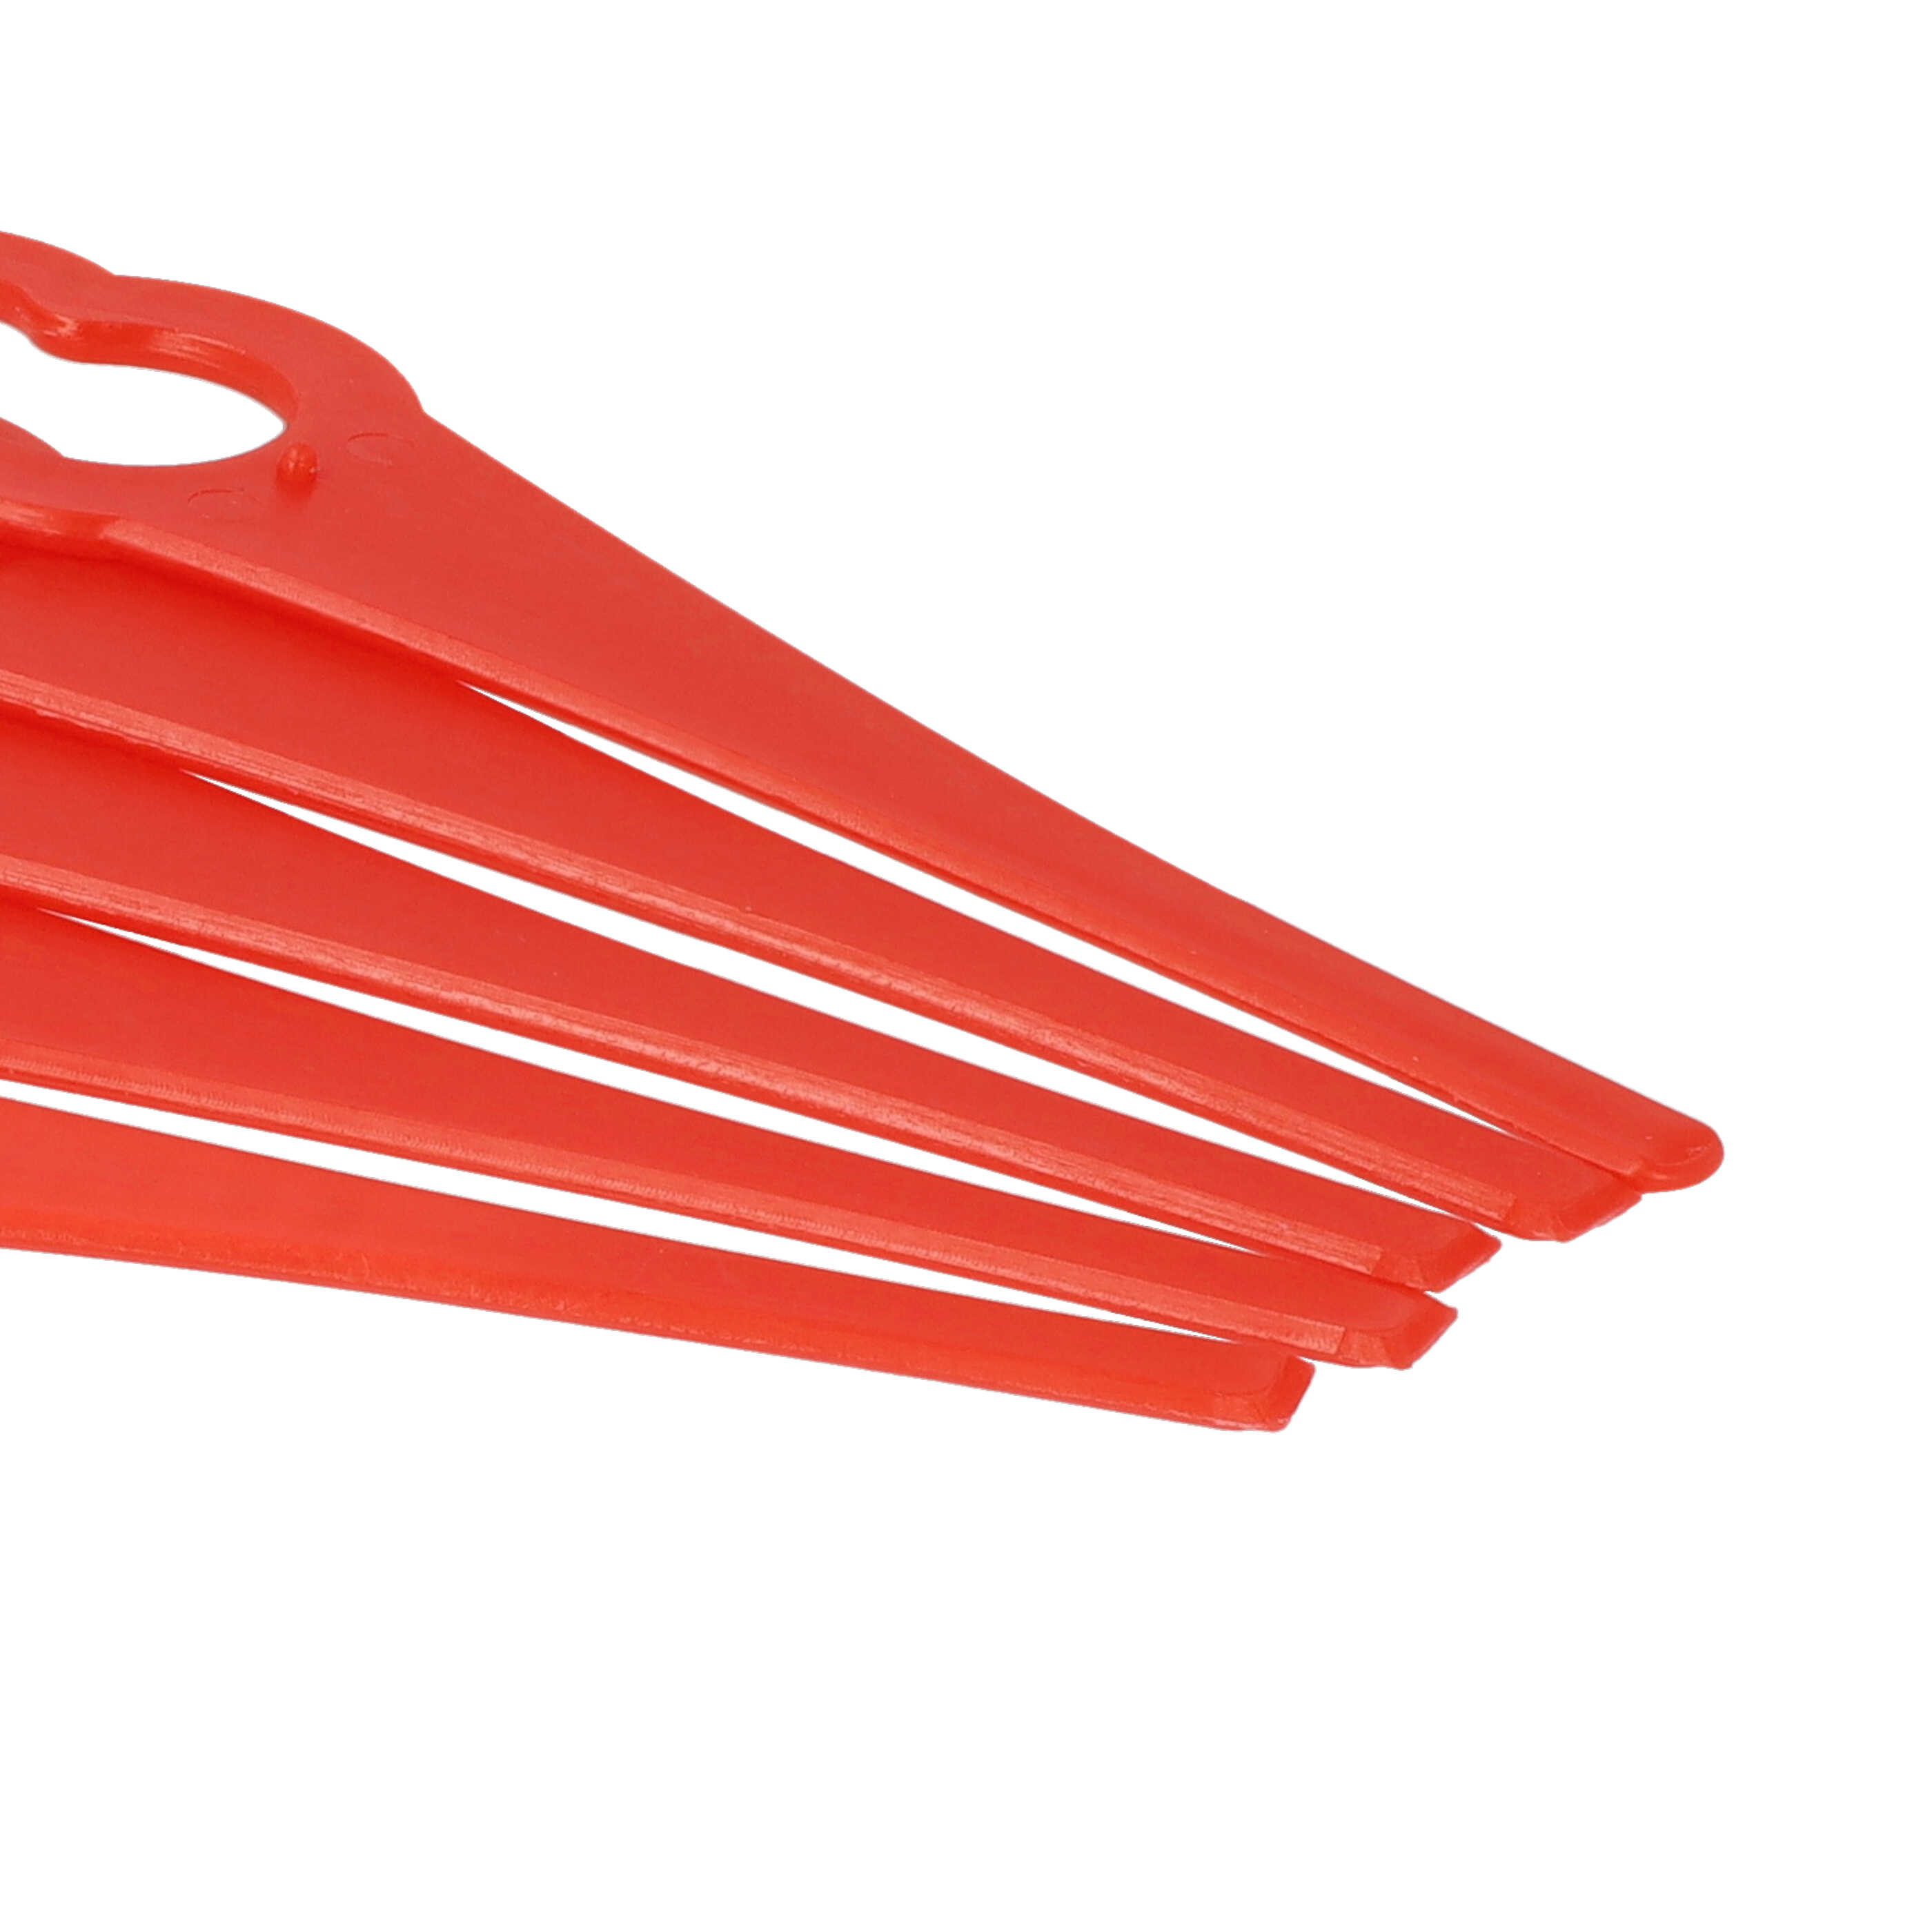 50x Nożyki do podkaszarki Bosch zam. ALM BQ026 - nylon / plastik, czerwony